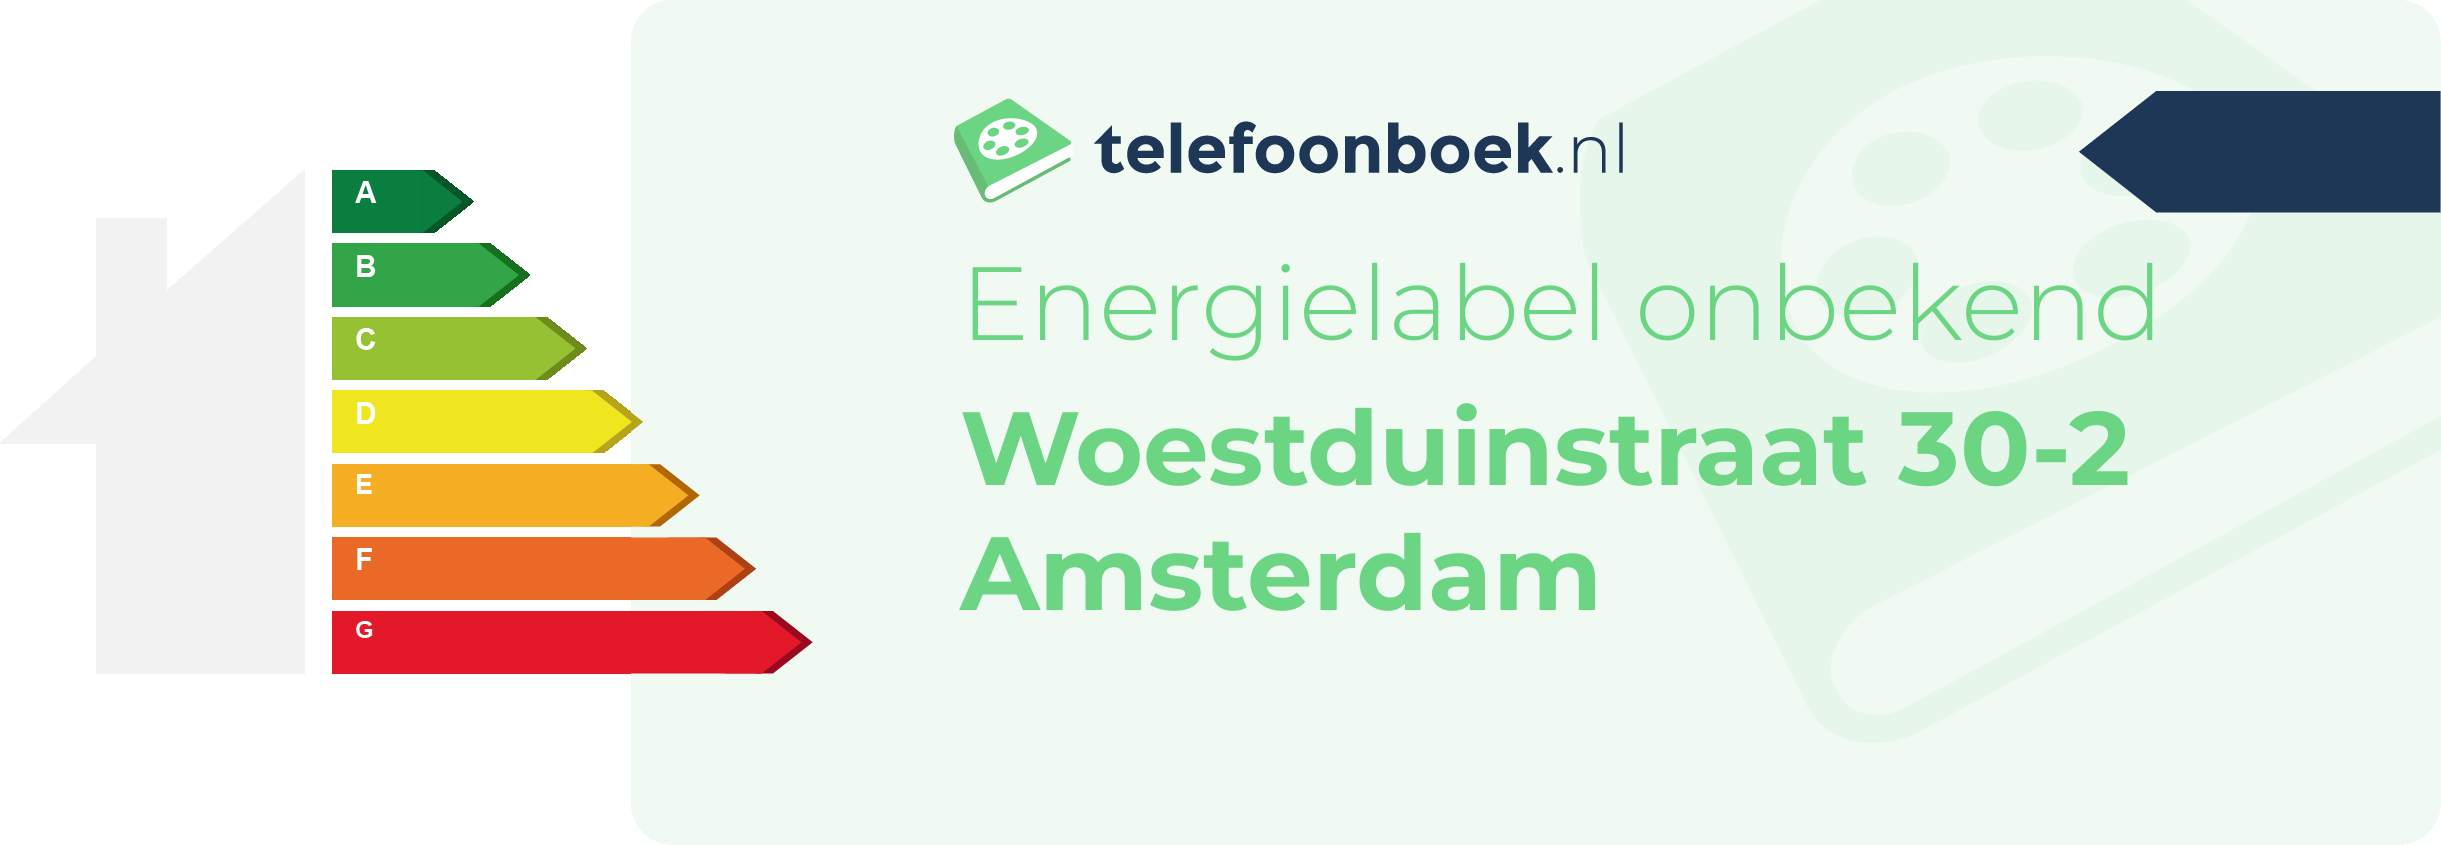 Energielabel Woestduinstraat 30-2 Amsterdam